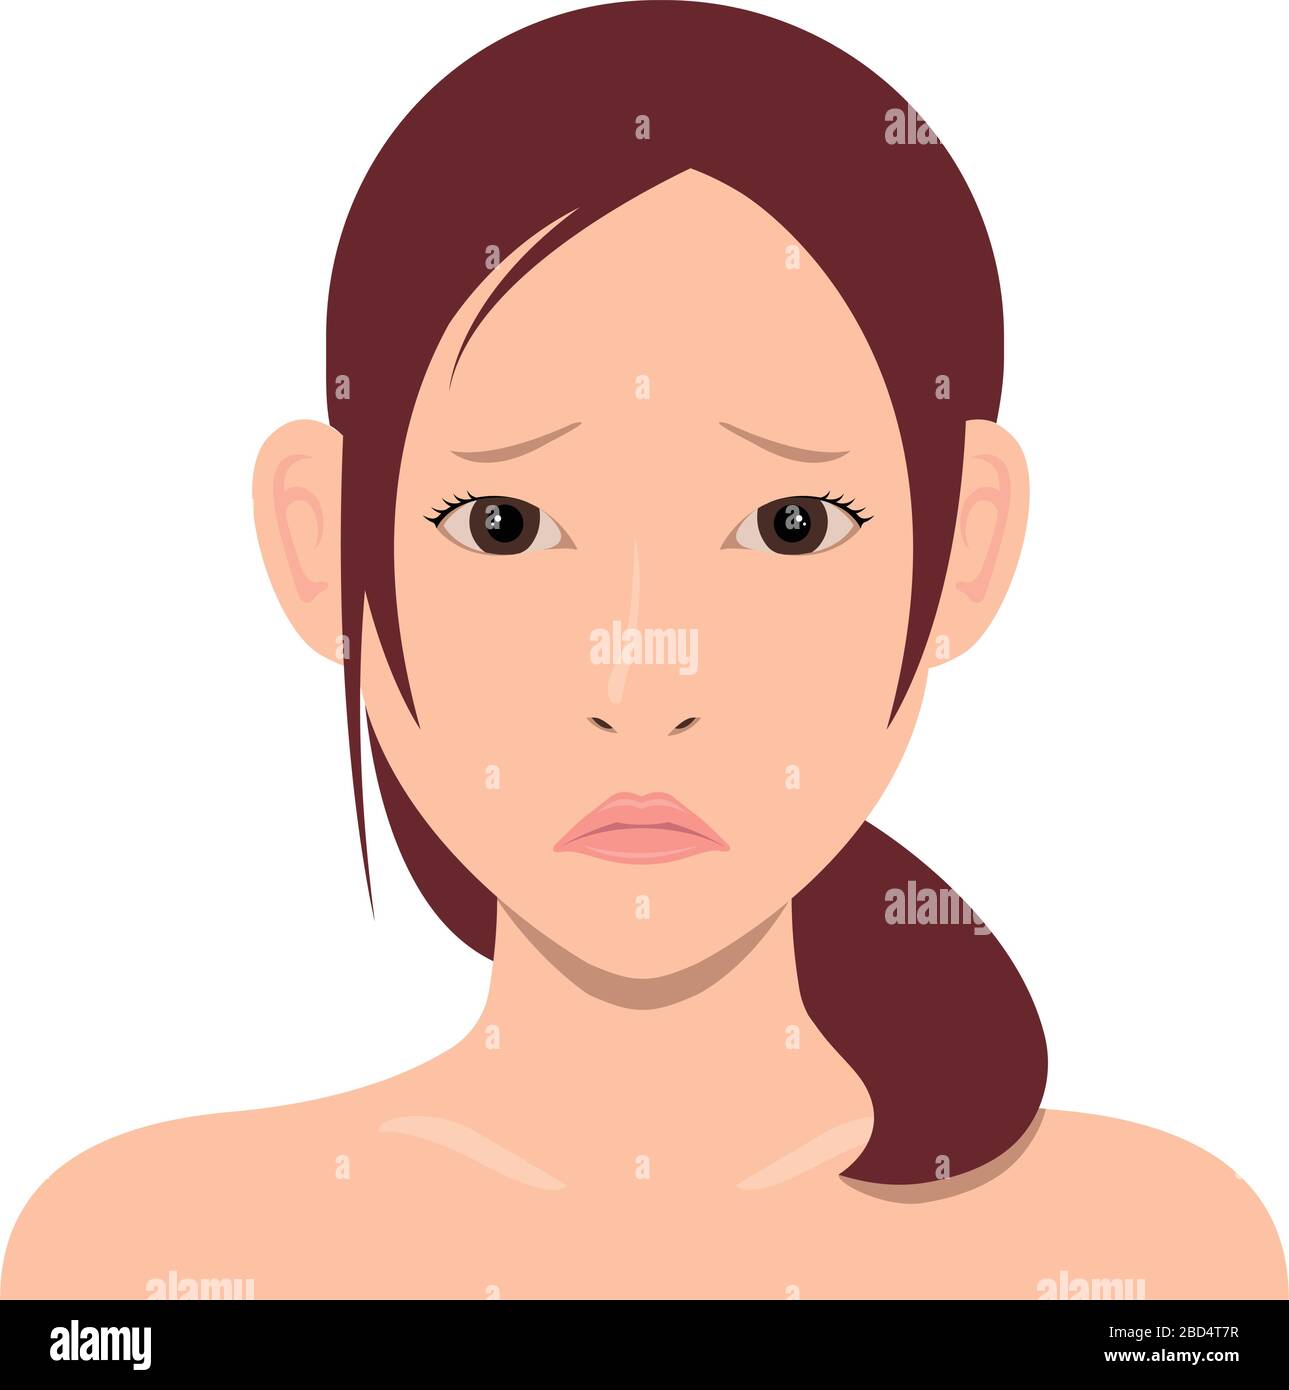 Jeune femme asiatique visage illustration vectorielle / visage troublé, visage embarrassé Illustration de Vecteur